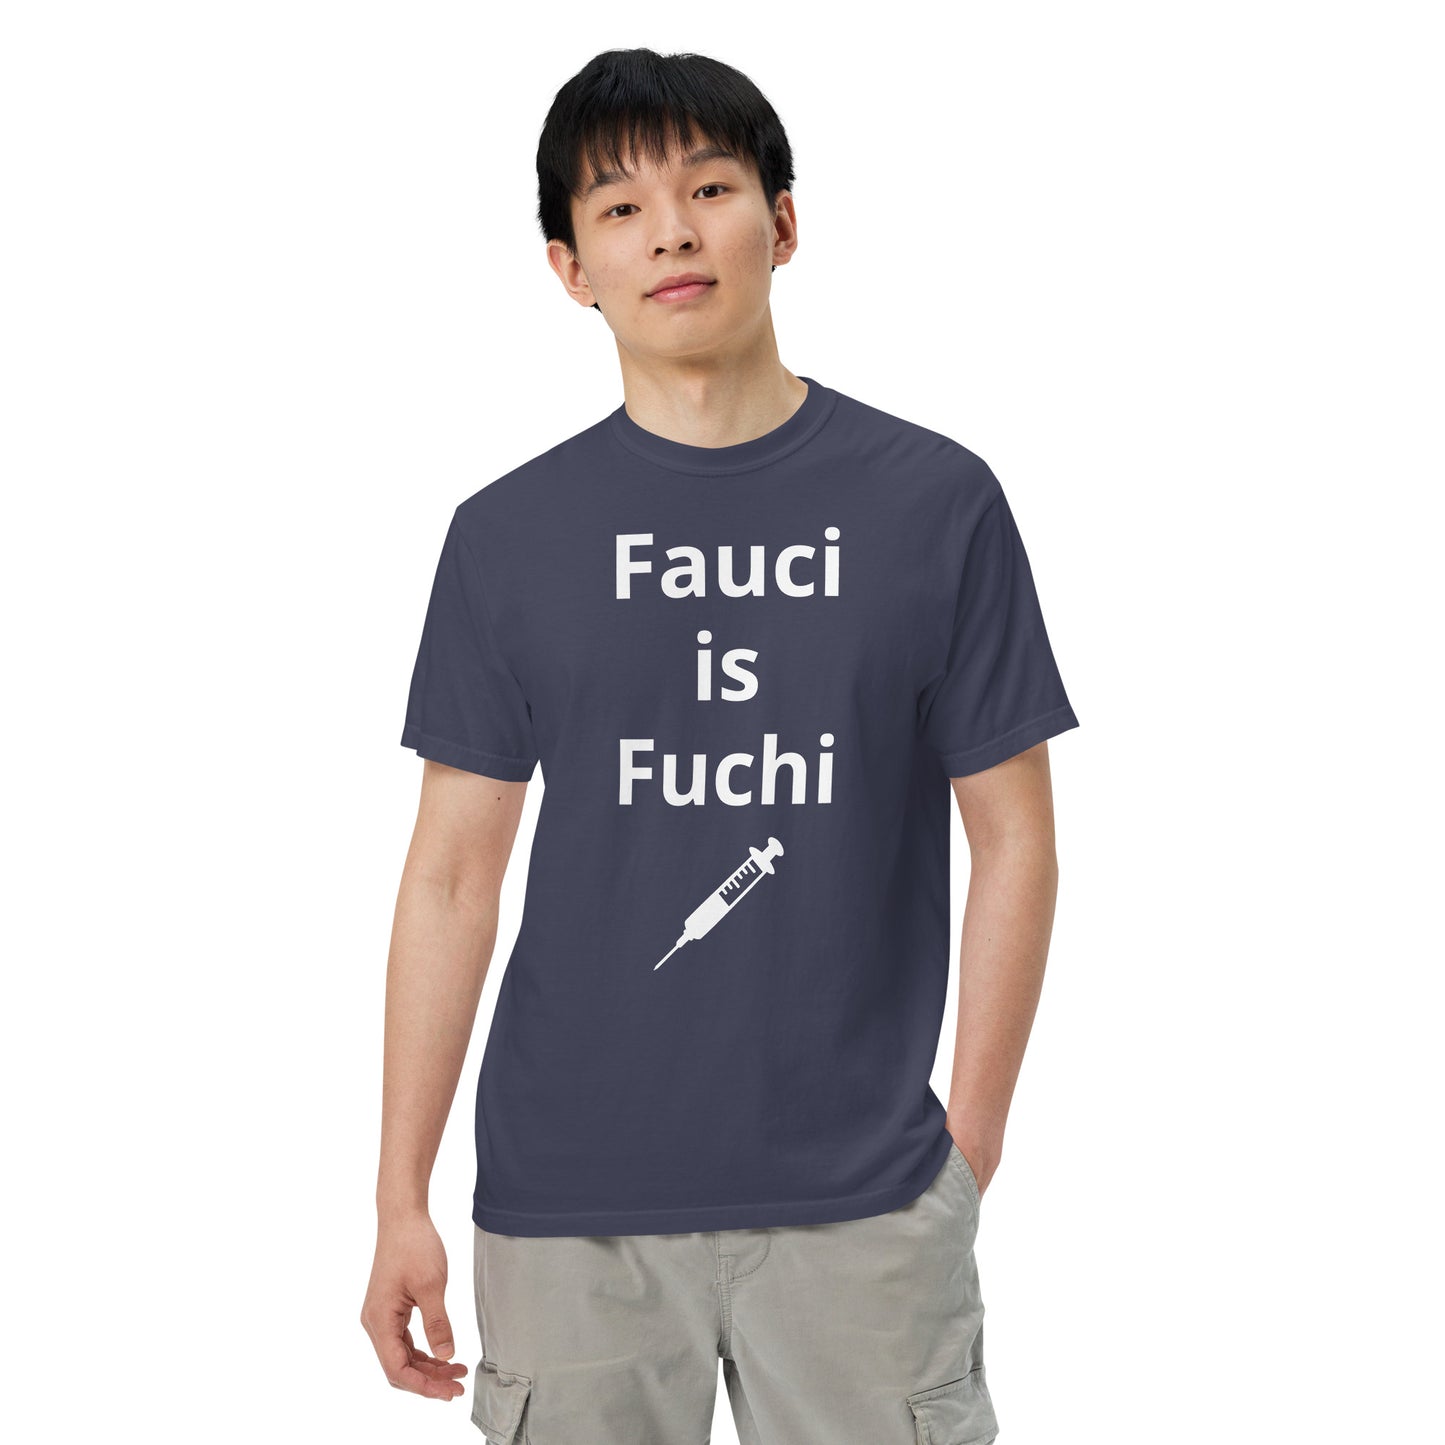 Fauci is Fuchi